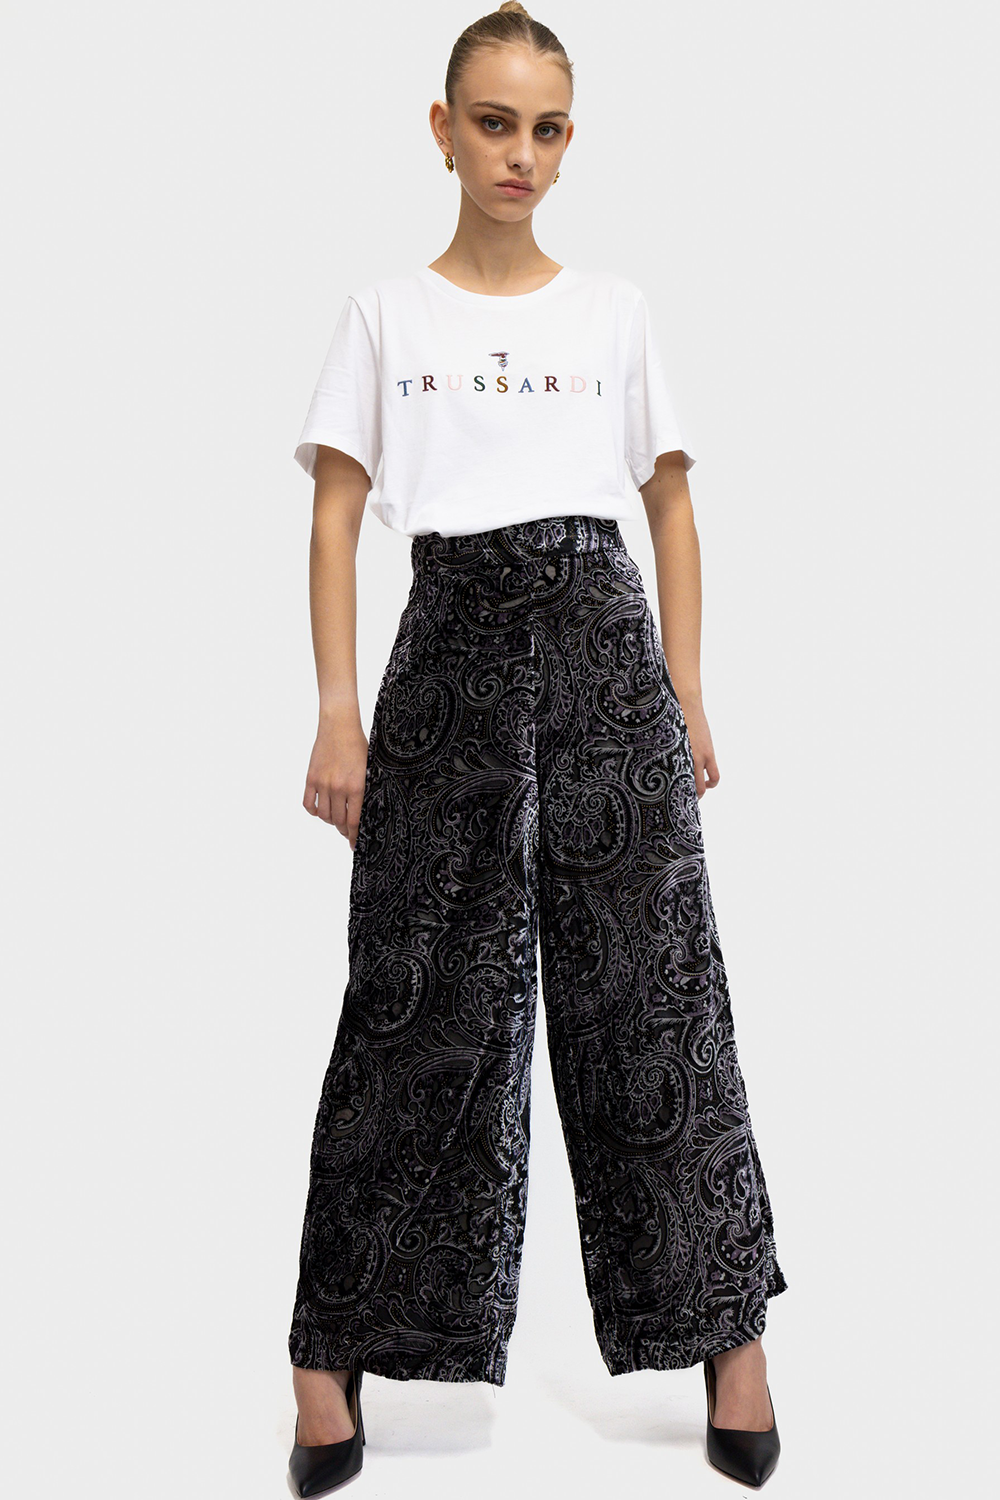 מכנסי פדלפון לנשים בצבע שחור RENE DHRHY Vendome online | ונדום .